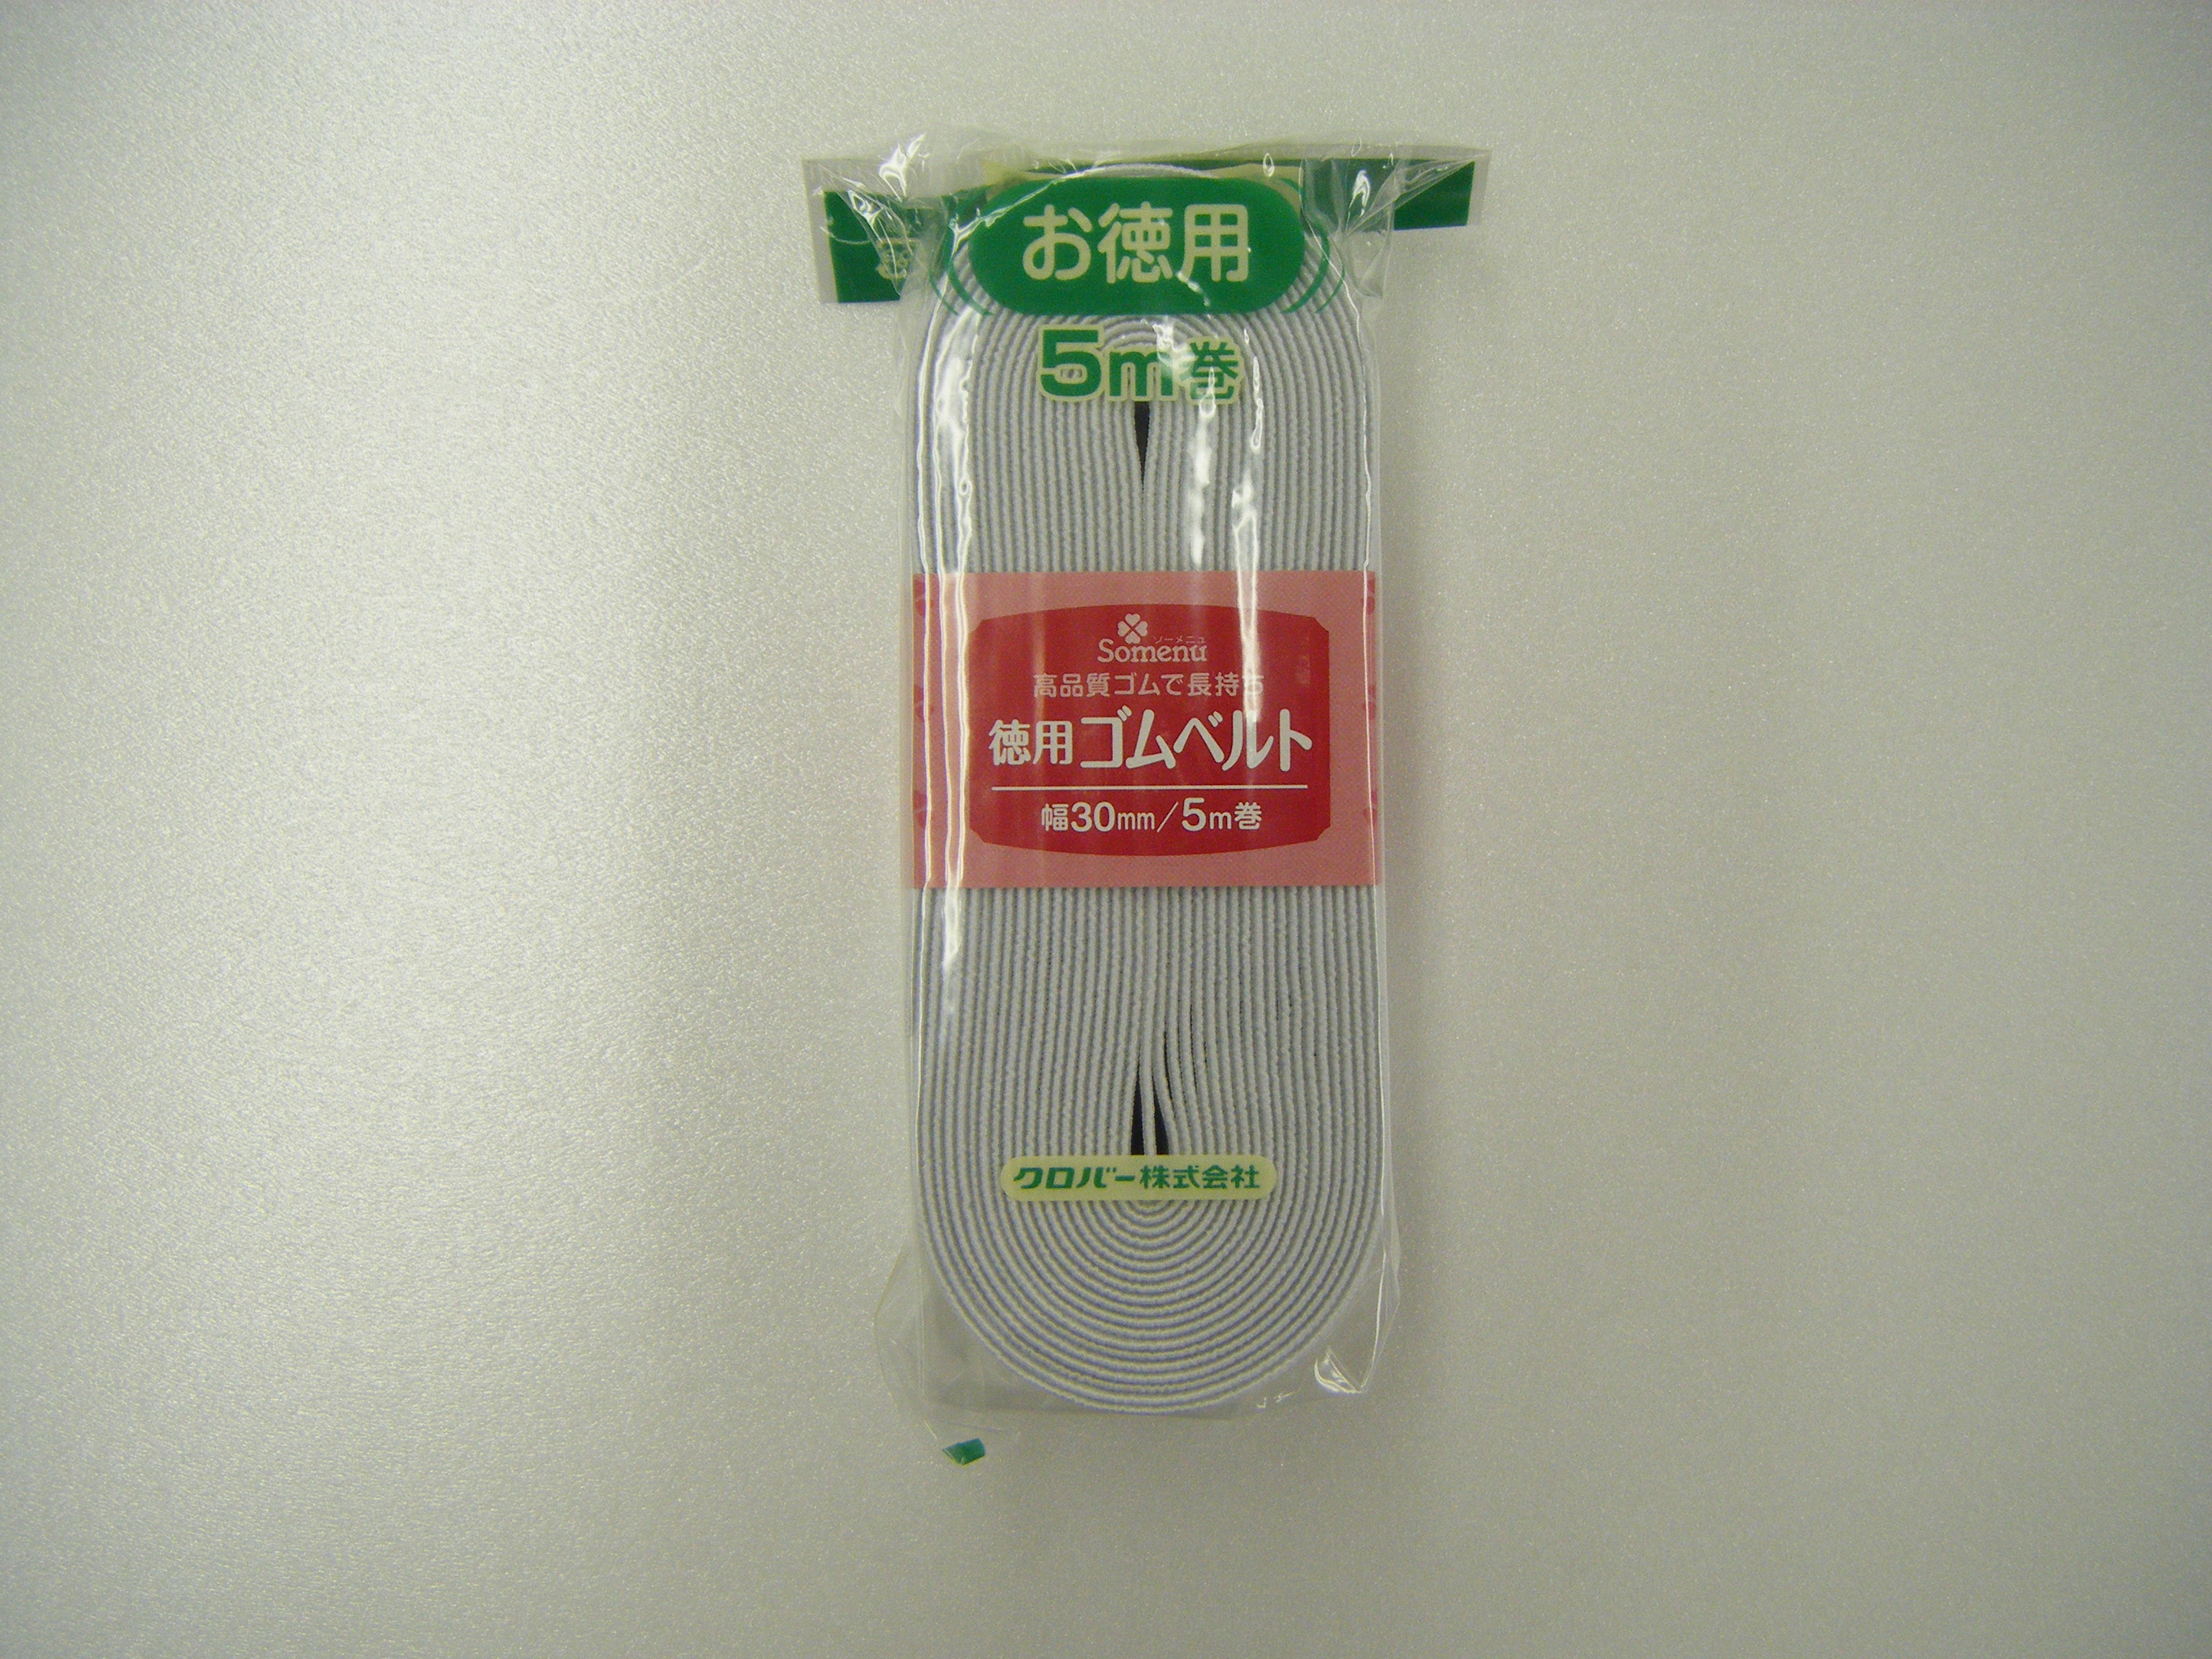 26078 經濟型橡膠帶<30mm寬度>[工藝品用品] 三葉草